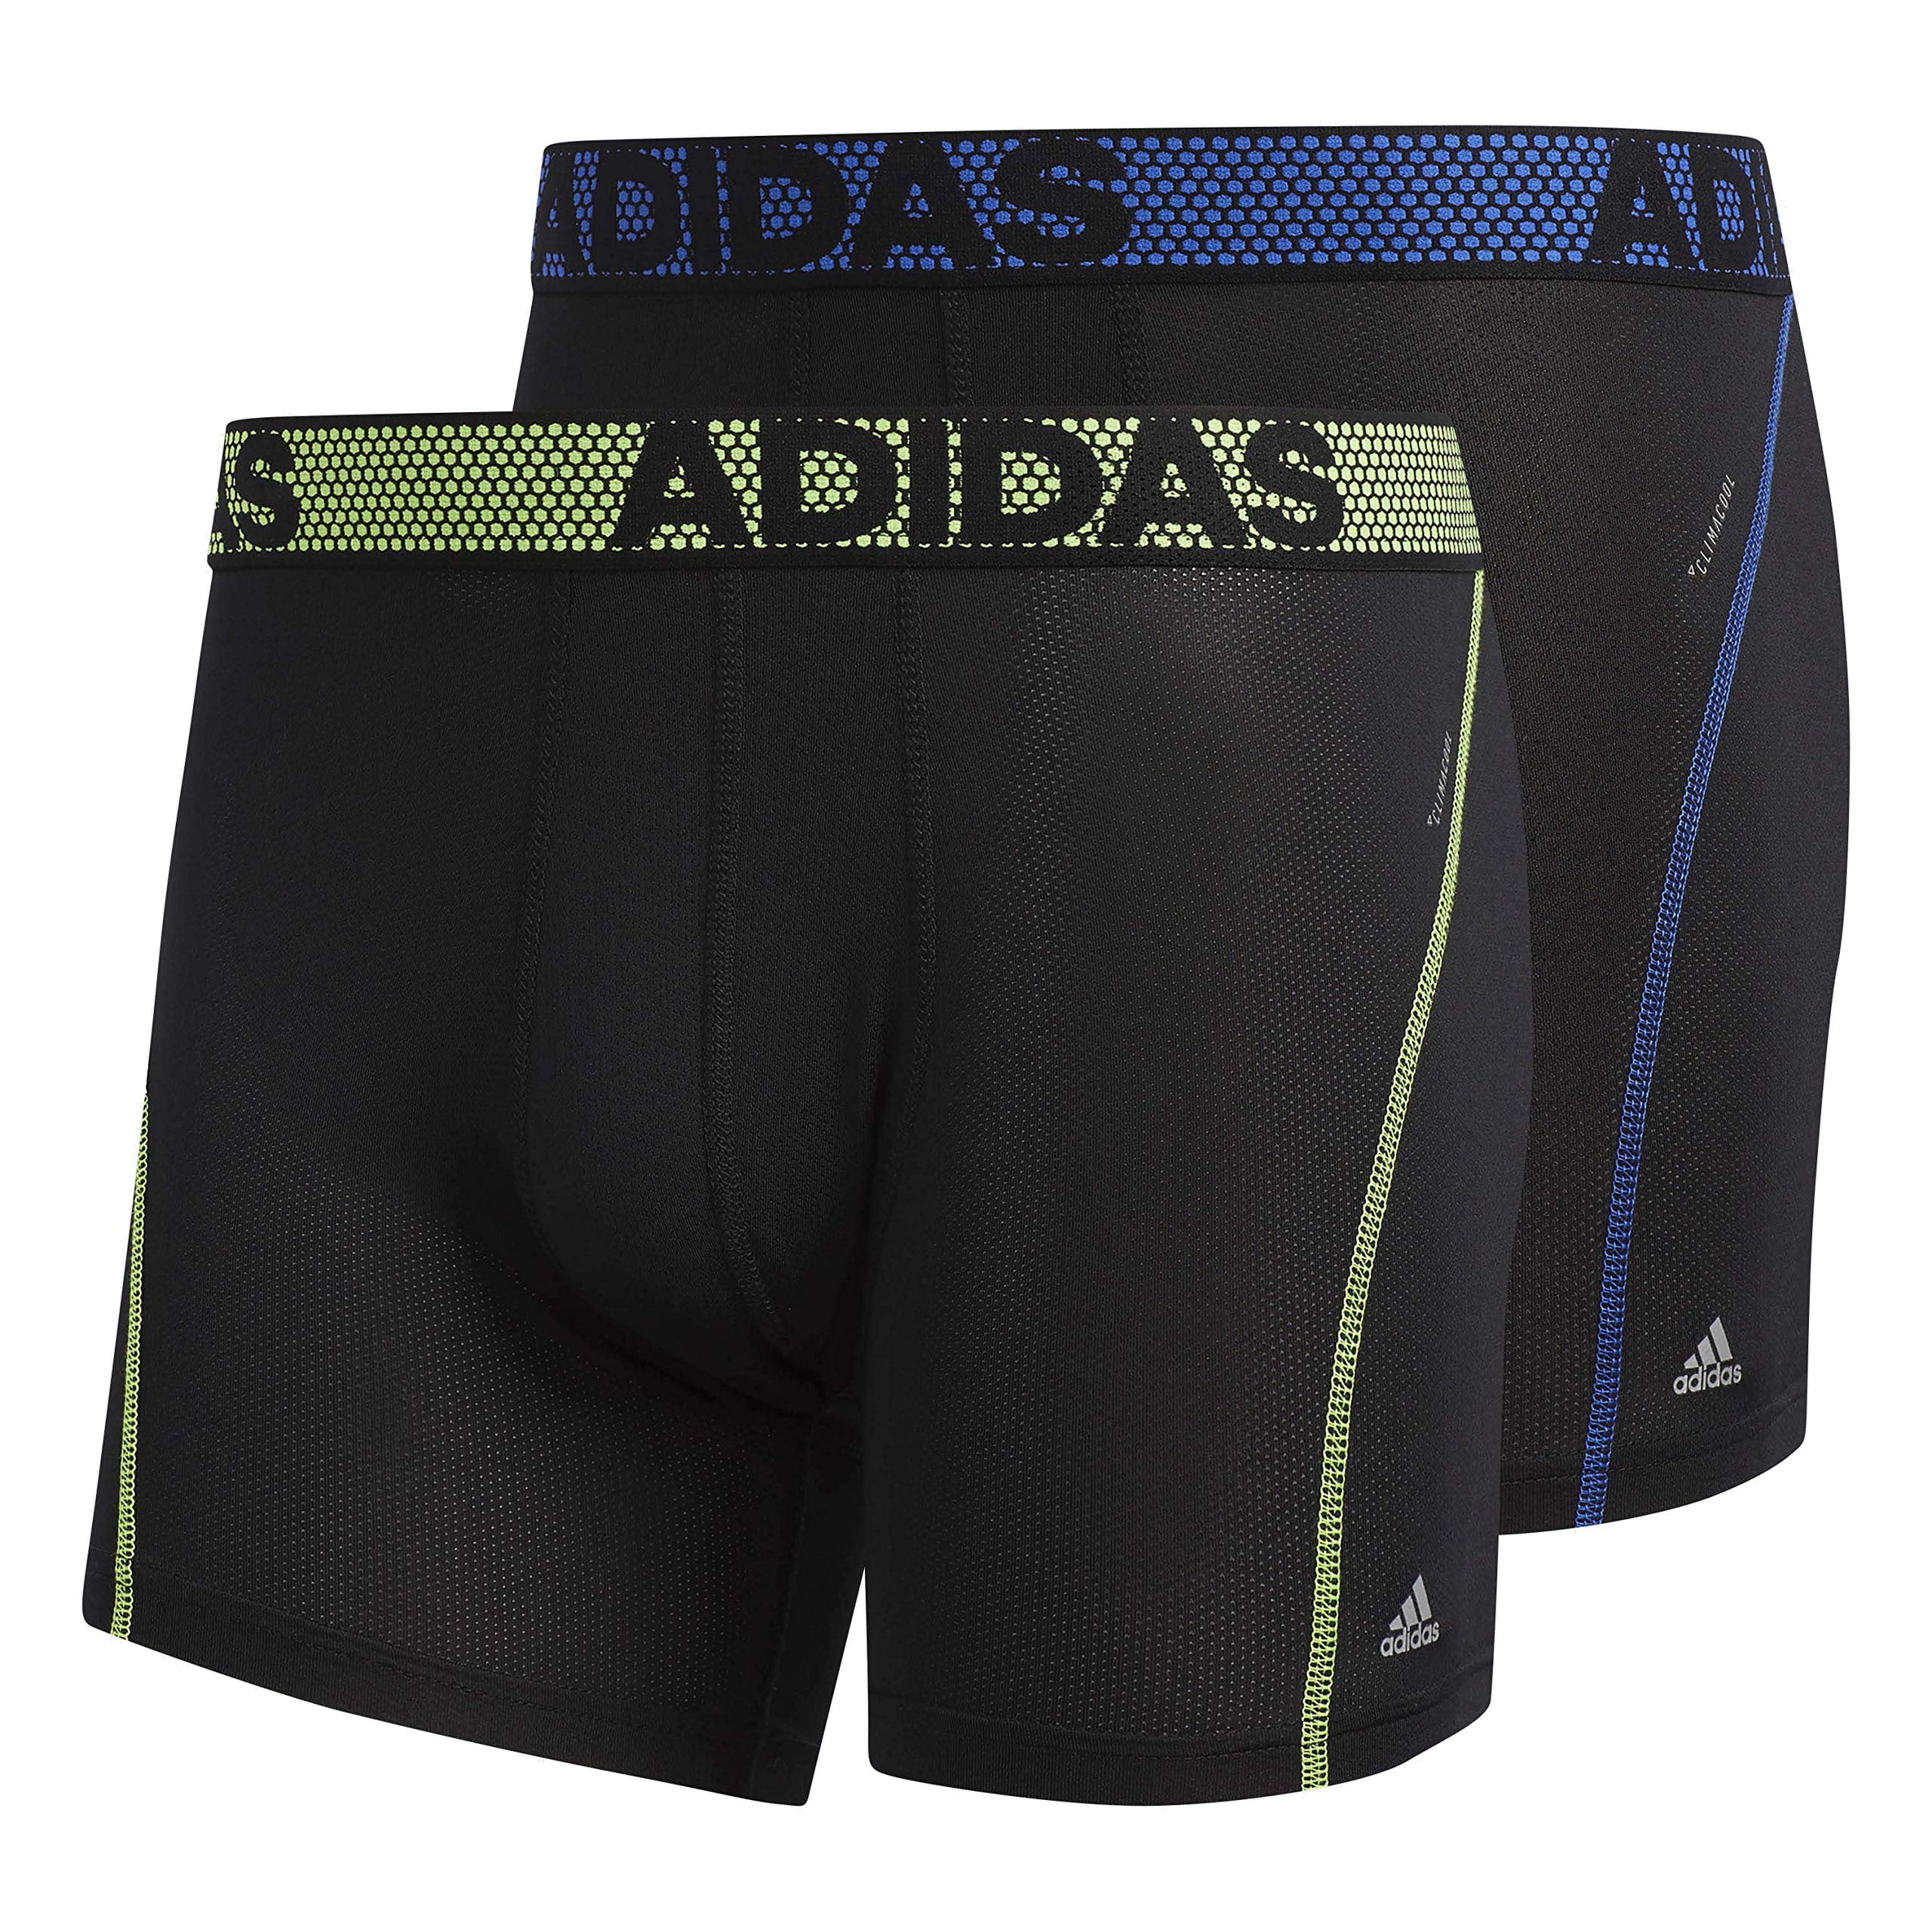 Adidas Underwear - Mens Underwear Green Blue Small 2-pack Boxer Brief S